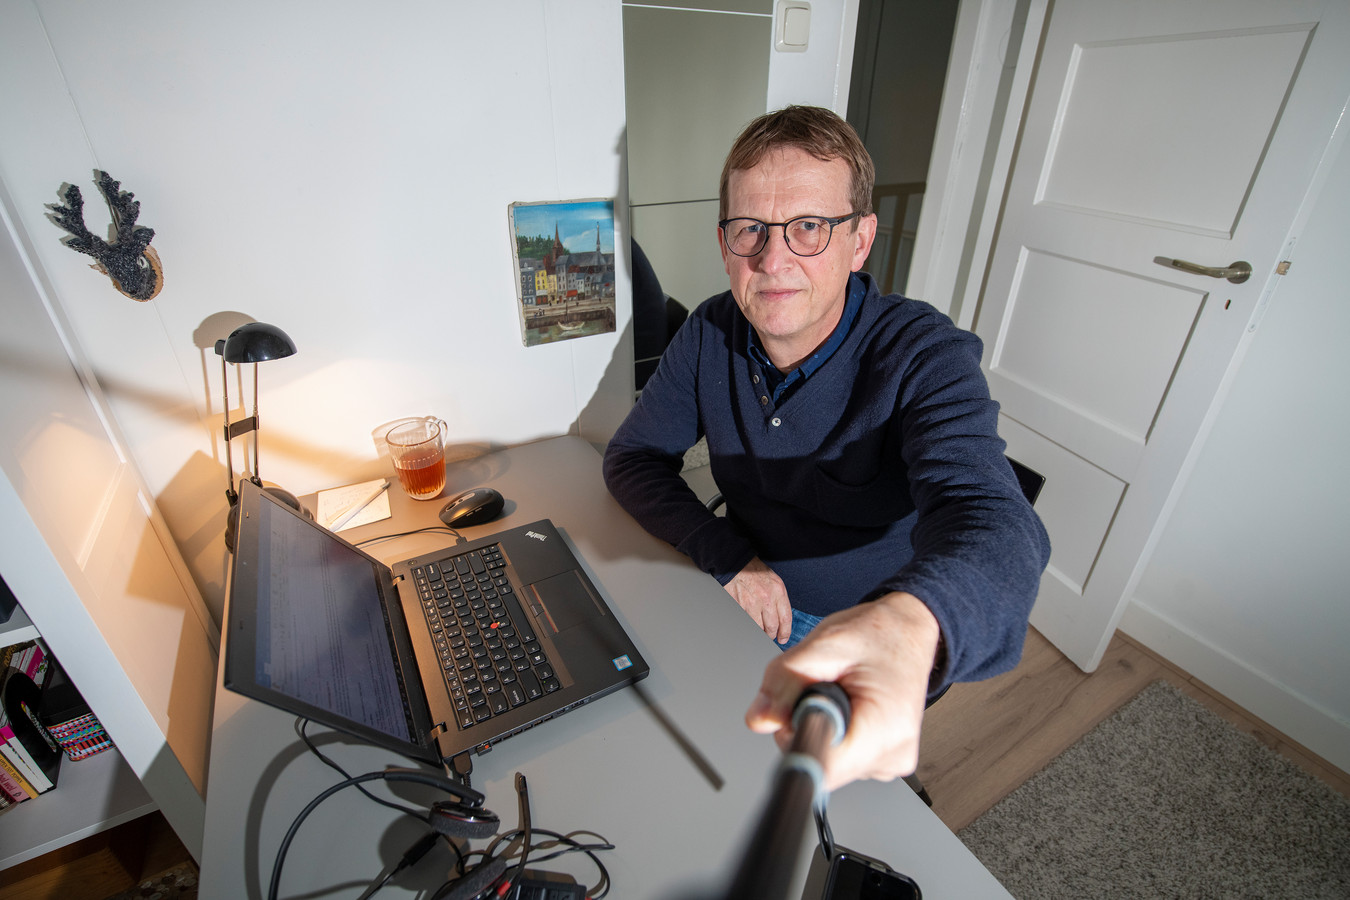 Marketingmanager Jan Blom uit Beekbergen werkt al vaker vanuit huis. ,,Een dag in de week is prettig, maar nu de hele week..."